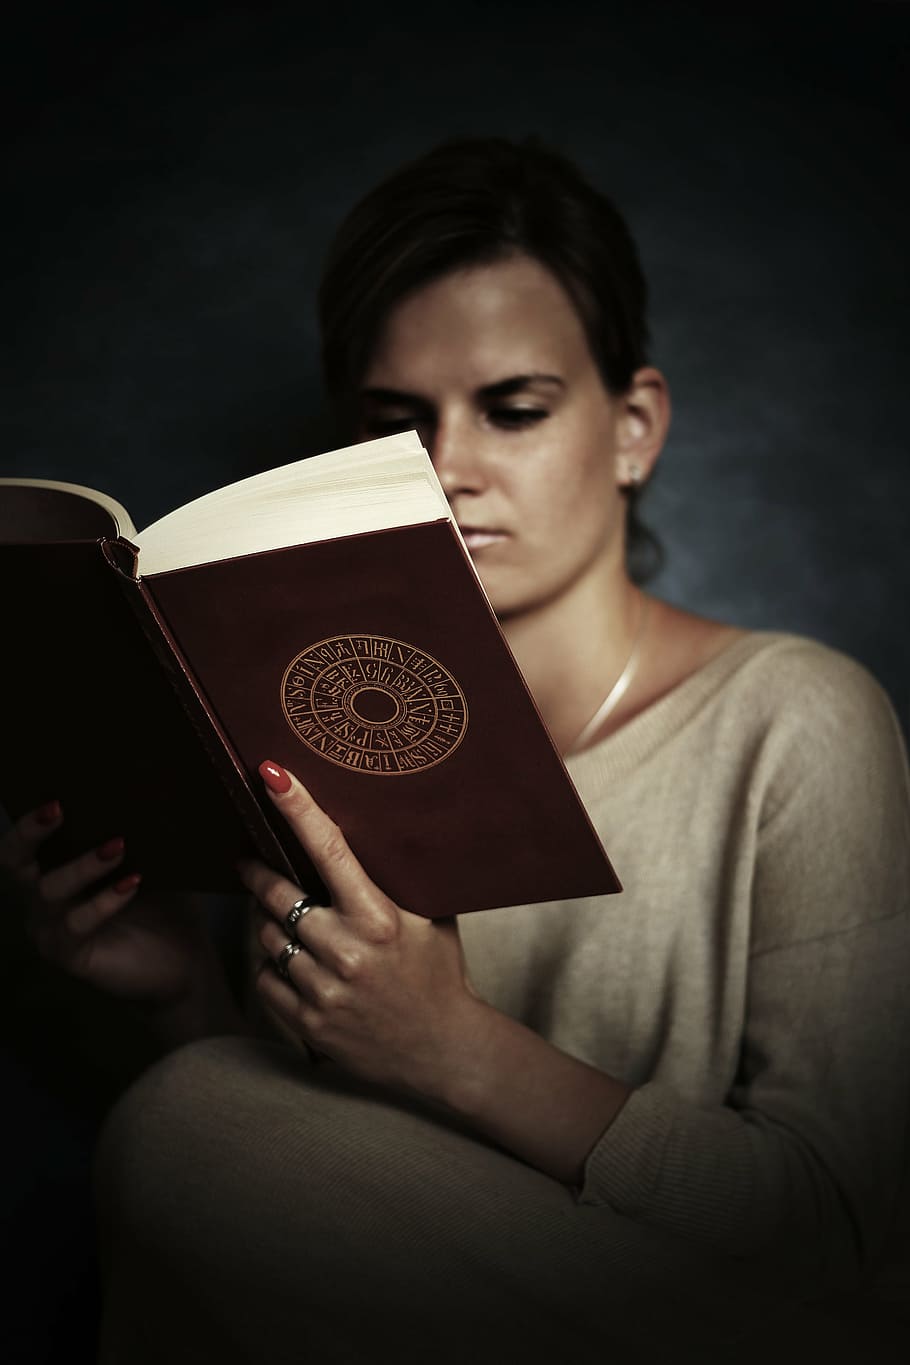 mujer leyendo, marrón, libro, niña, alumno, libros, universidad, joven, educación, escuela